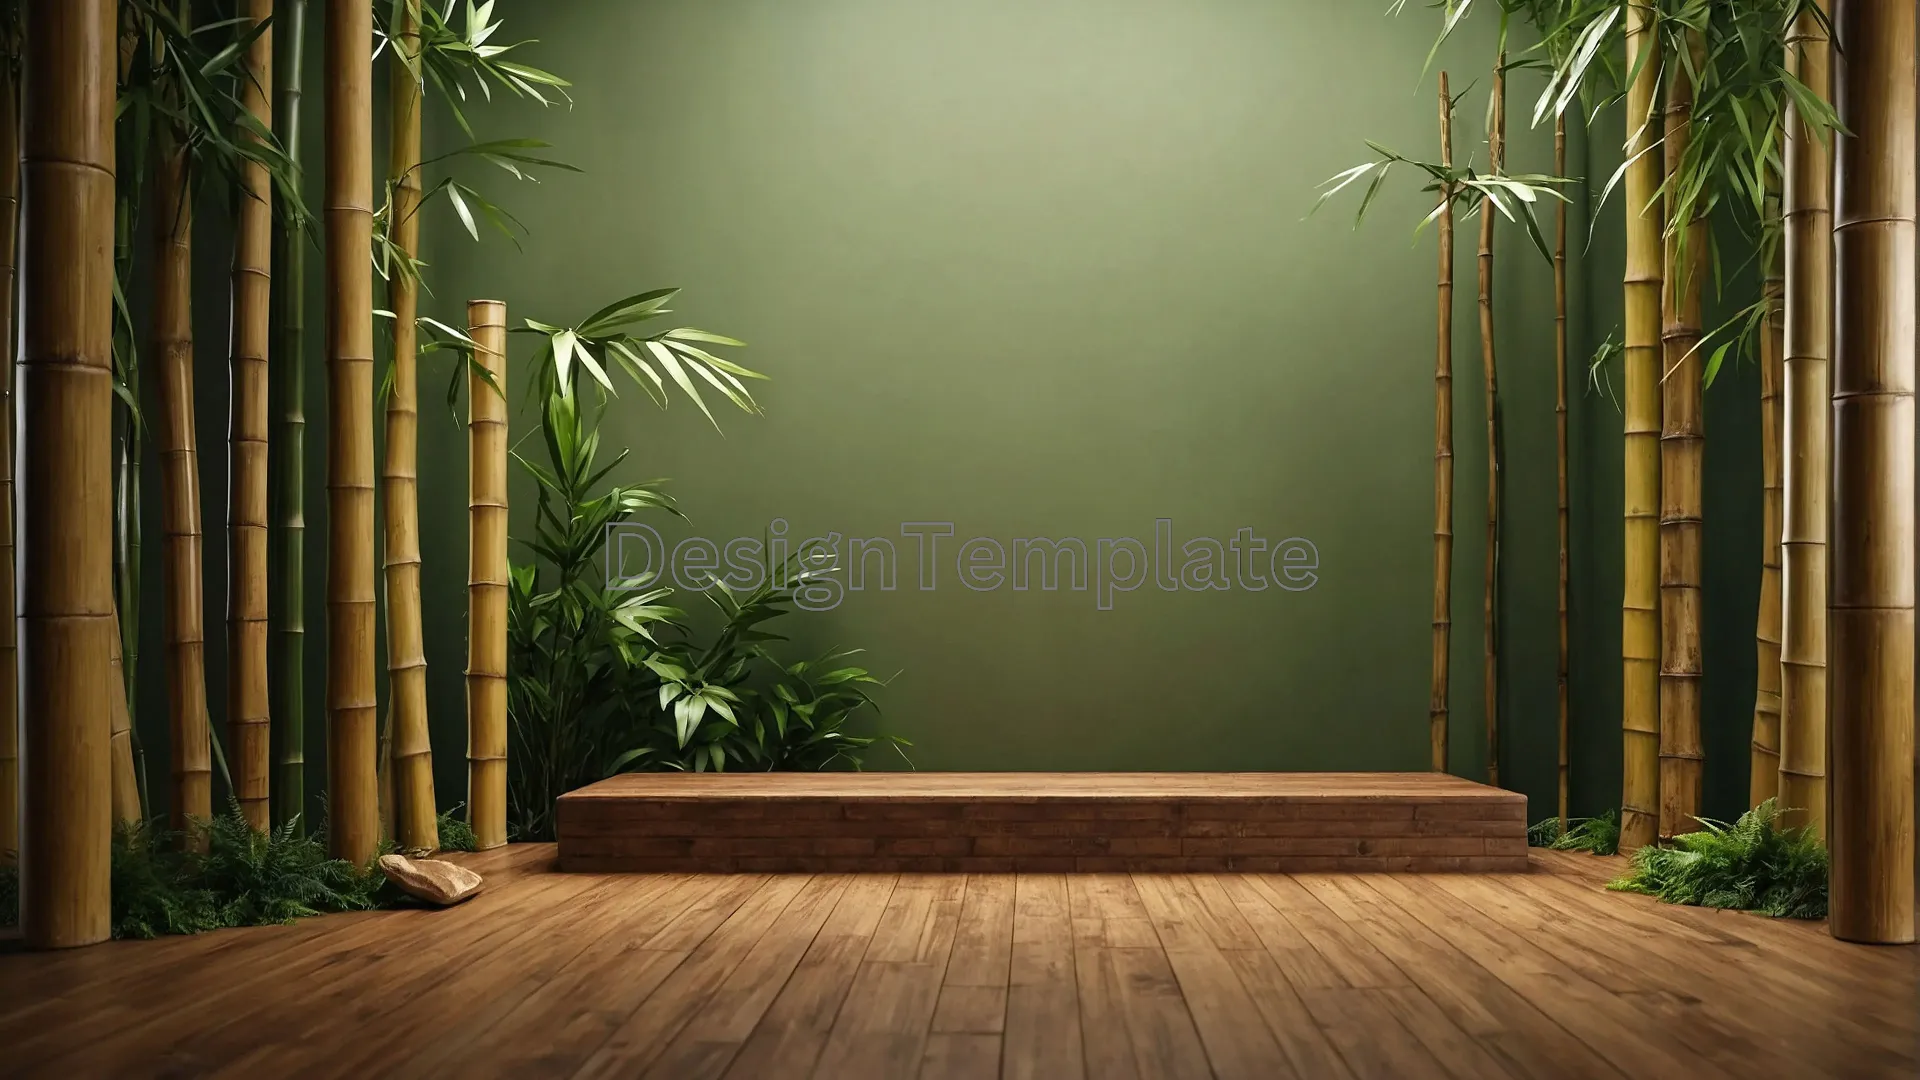 Minimalist Bamboo Reflection Verdant Interior Photo image